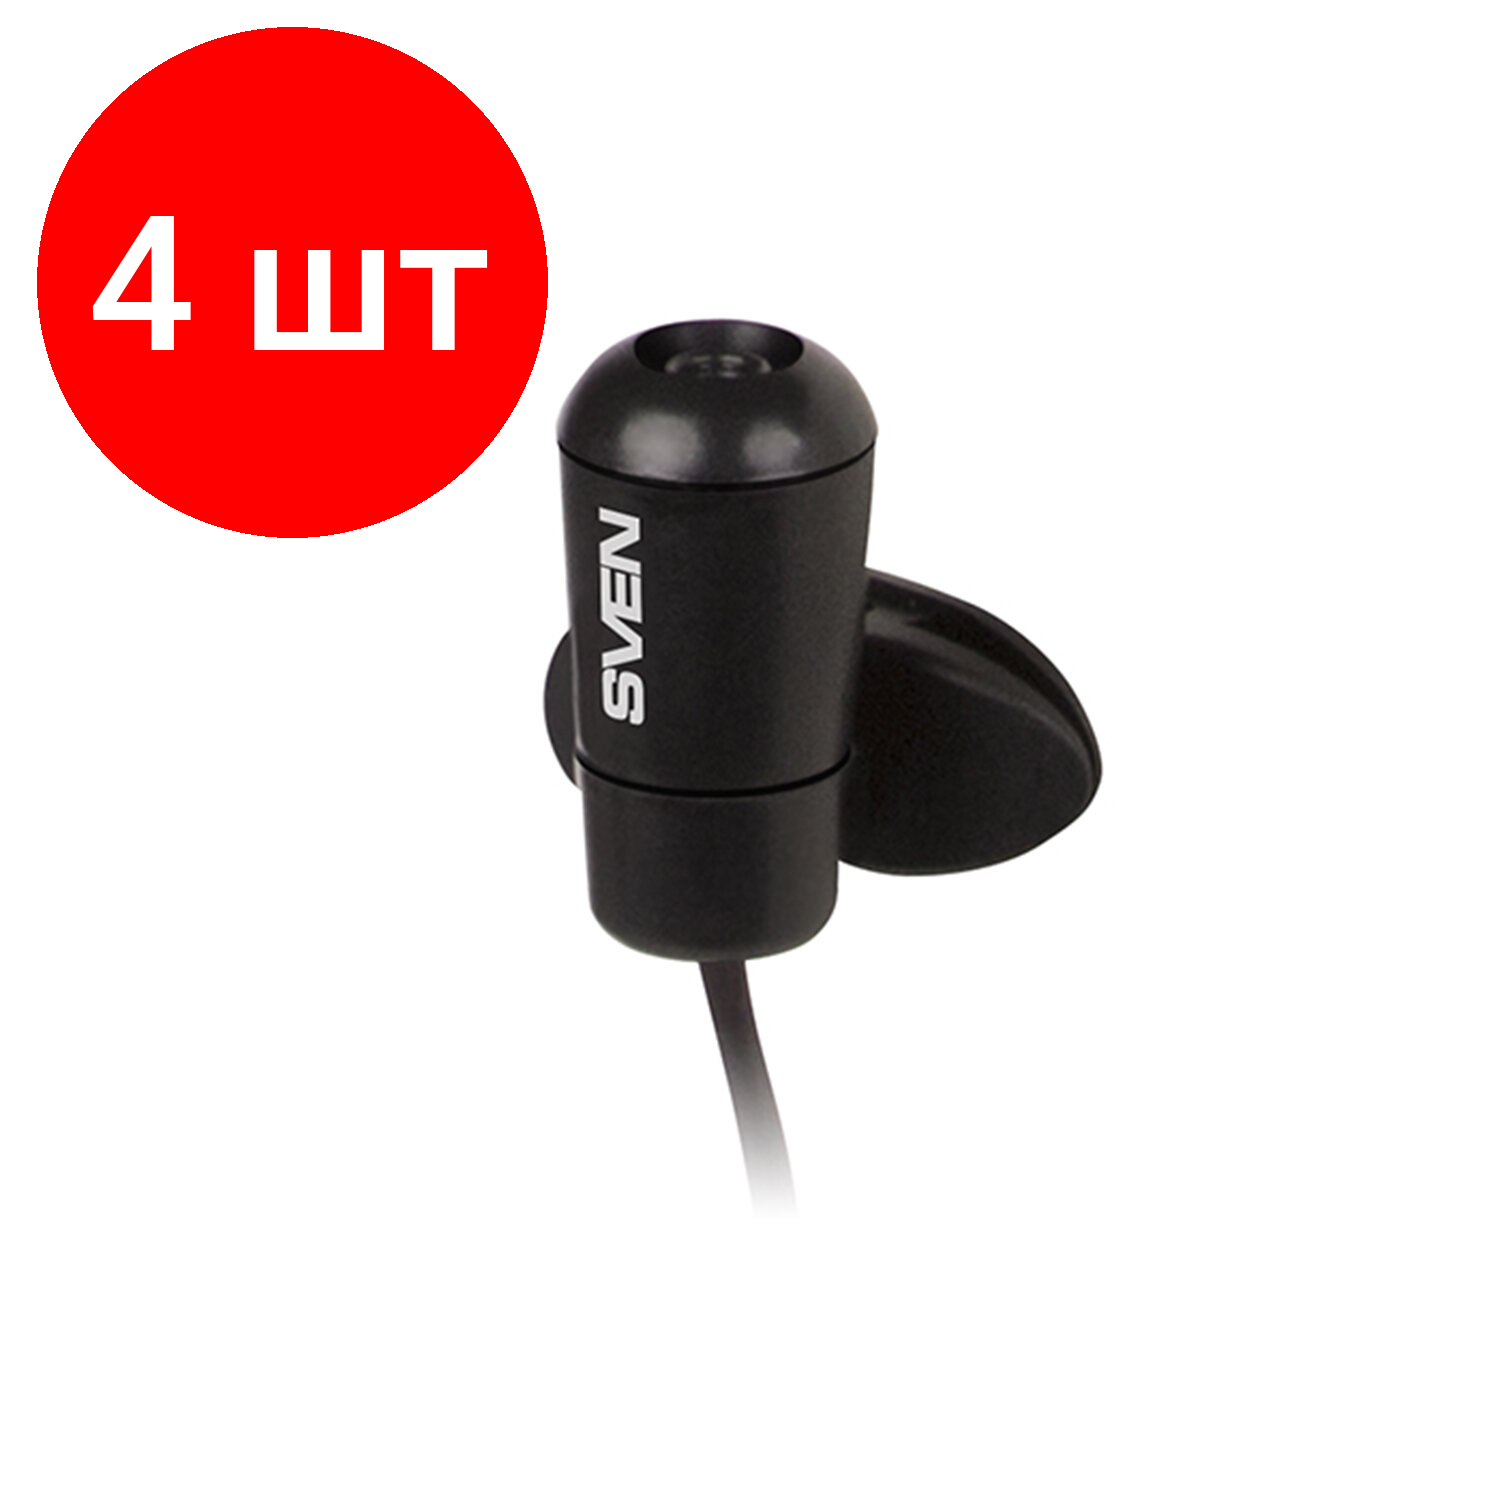 Комплект 4 шт, Микрофон-клипса SVEN MK-170, кабель 1.8 м, 58 дБ, пластик, черный, SV-014858